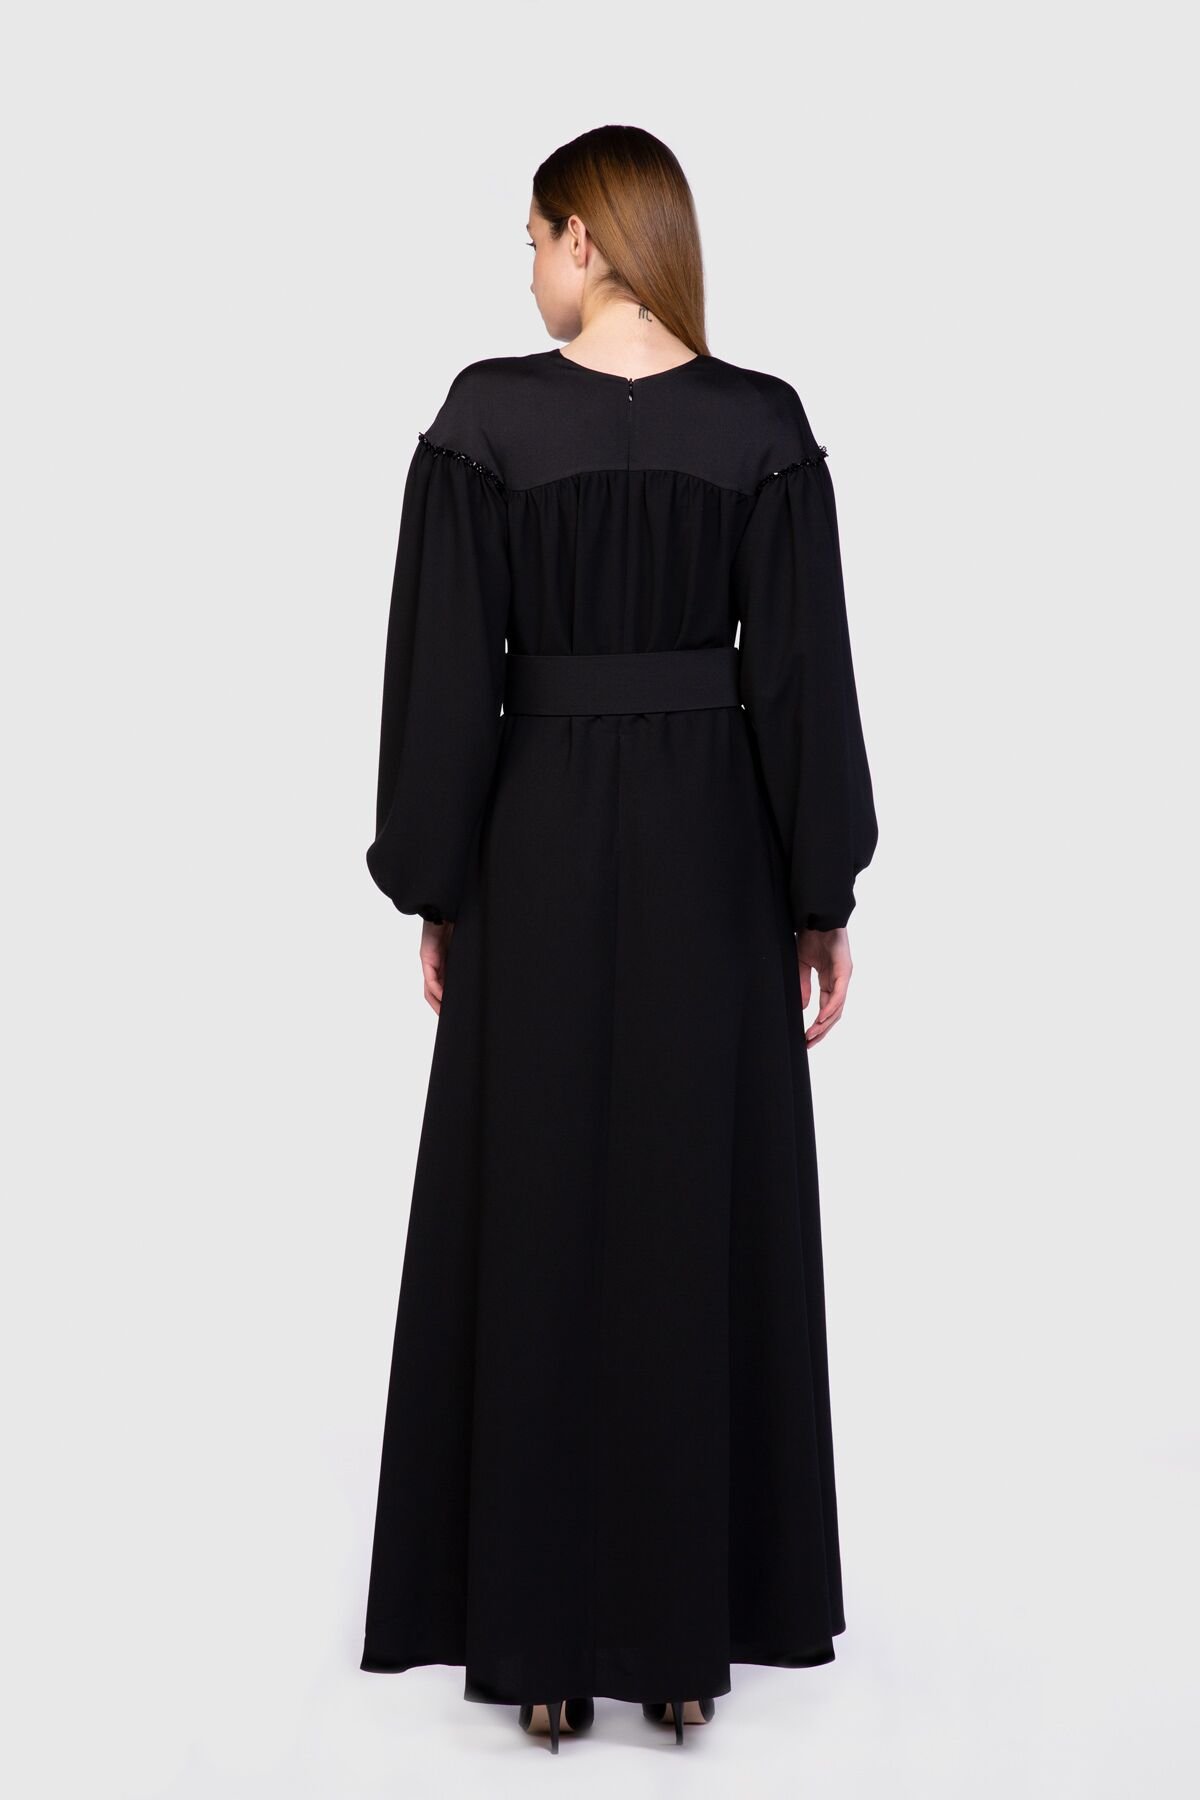 Kontrast Kumaşlı Ve Boncuk İşleme Detaylı Siyah Elbise